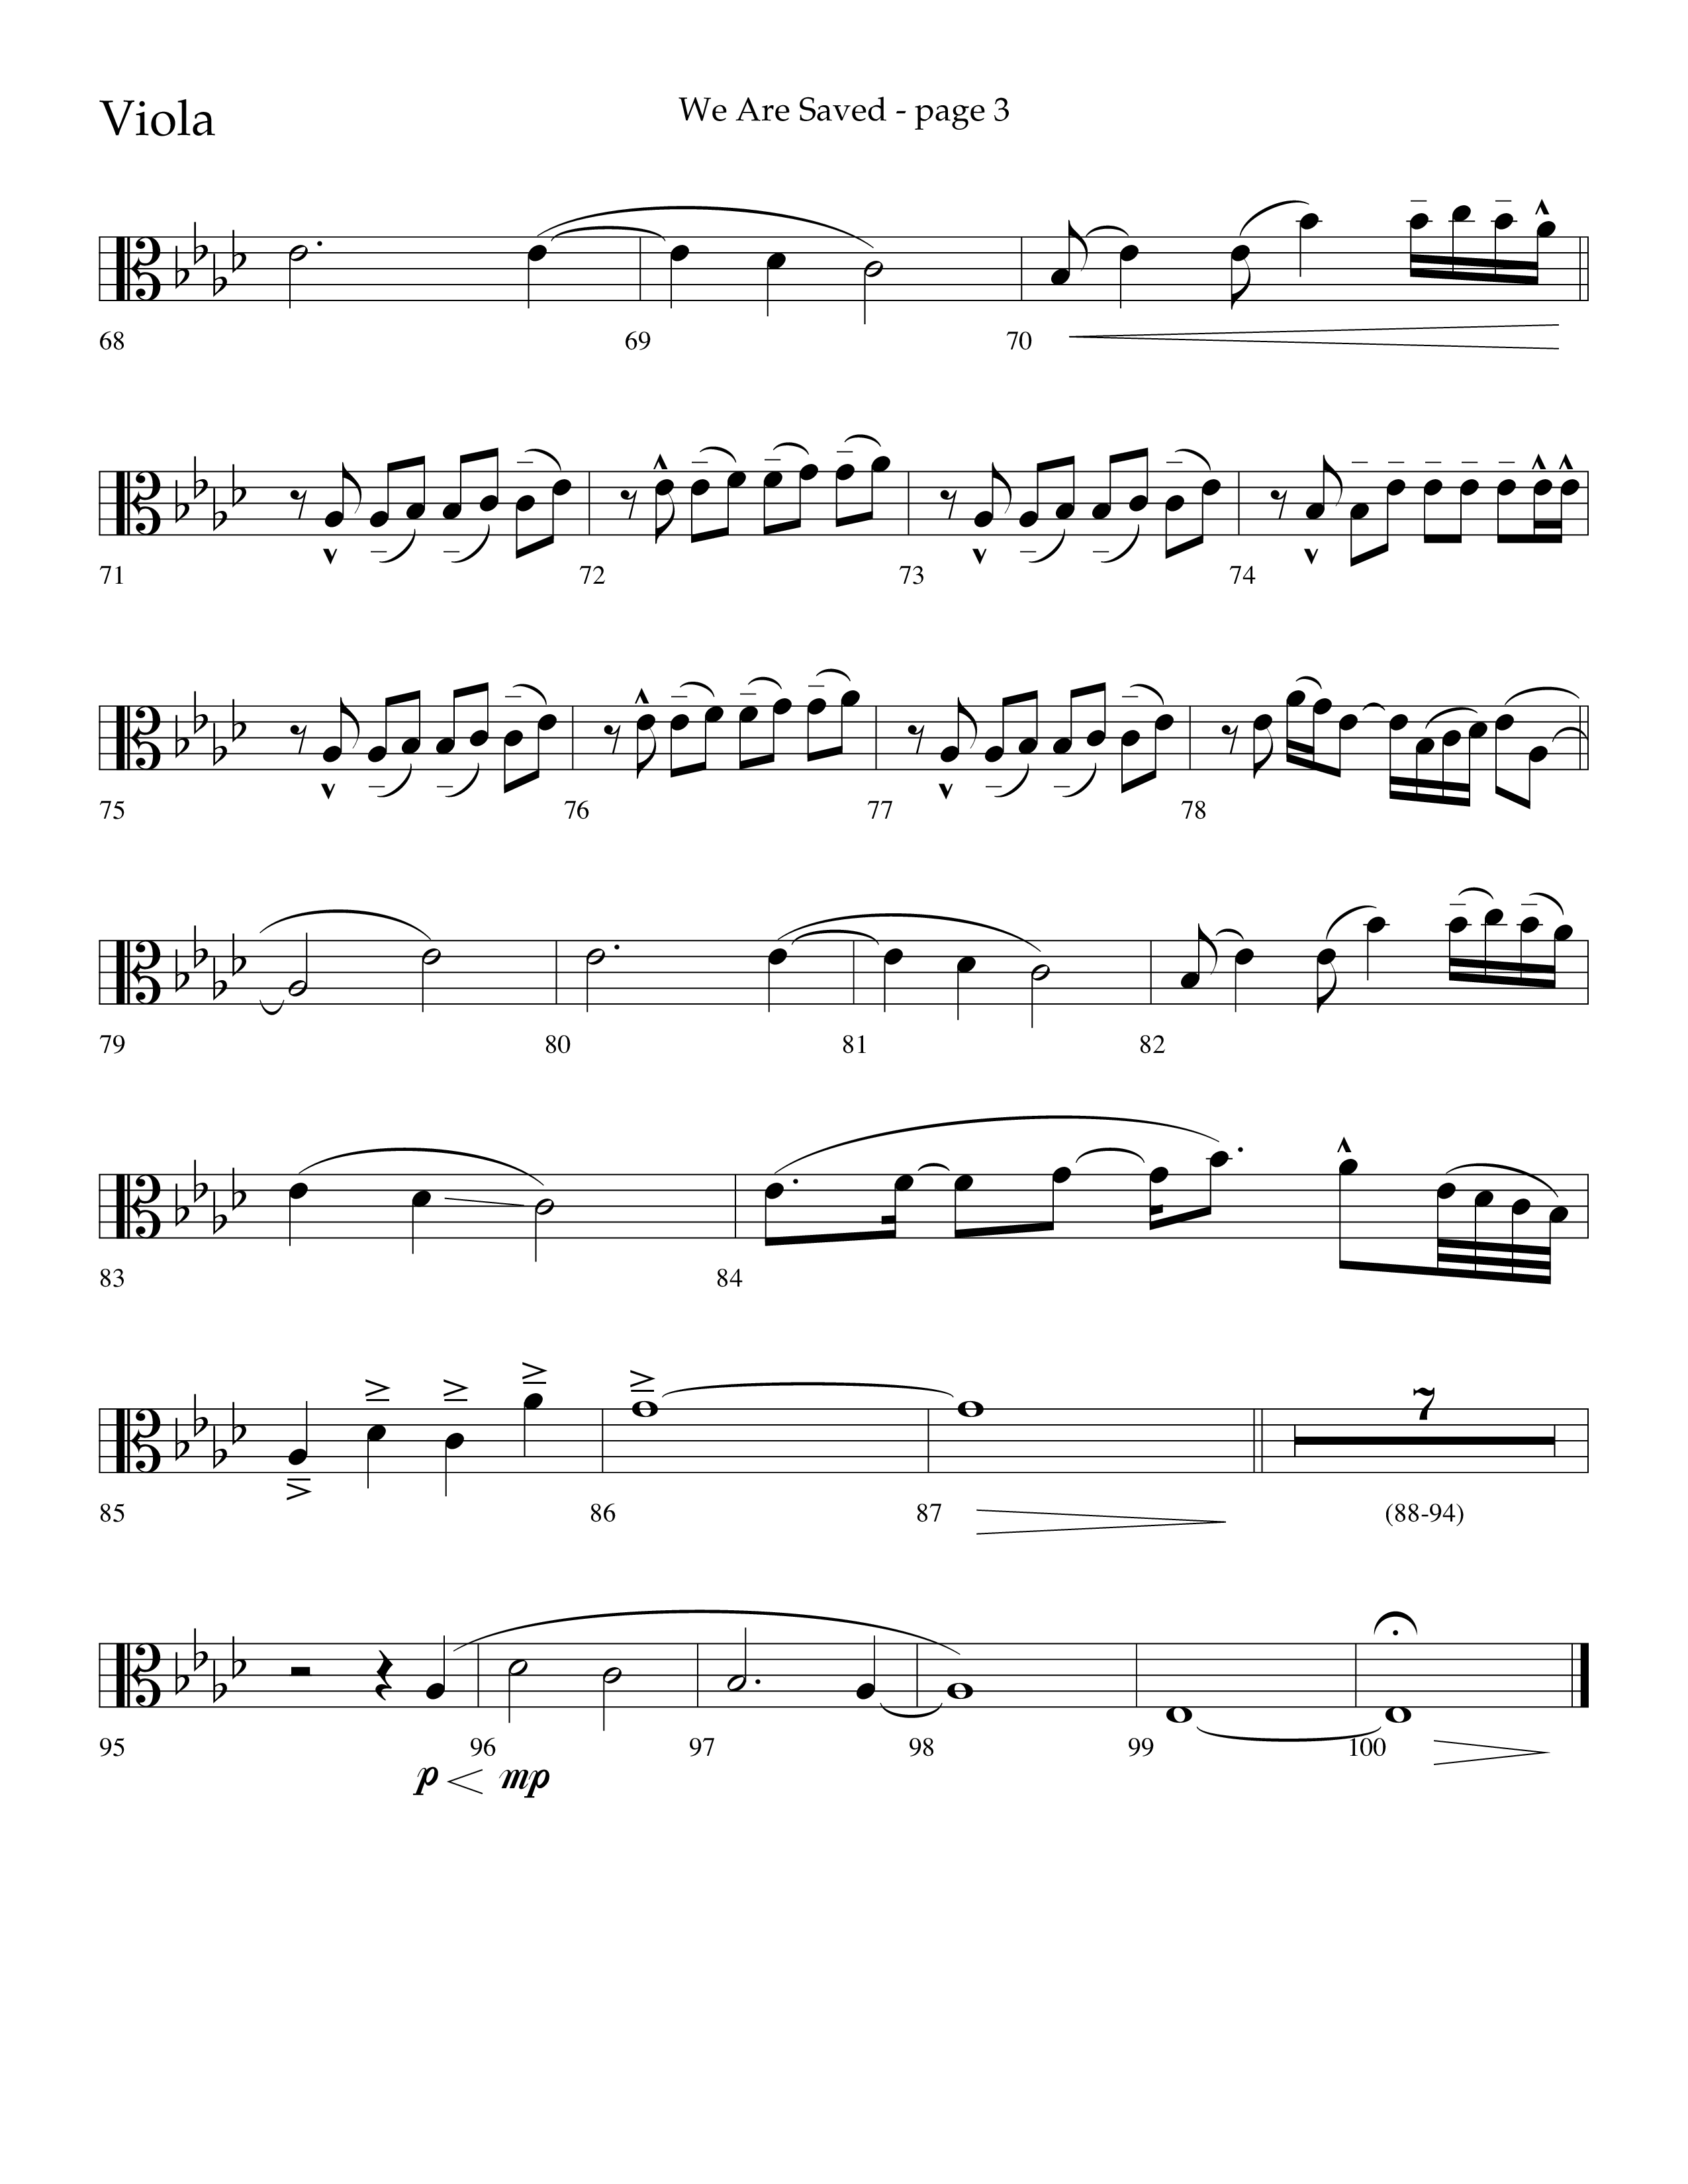 We Are Saved (Choral Anthem SATB) Viola (Lifeway Choral / Arr. Cliff Duren)